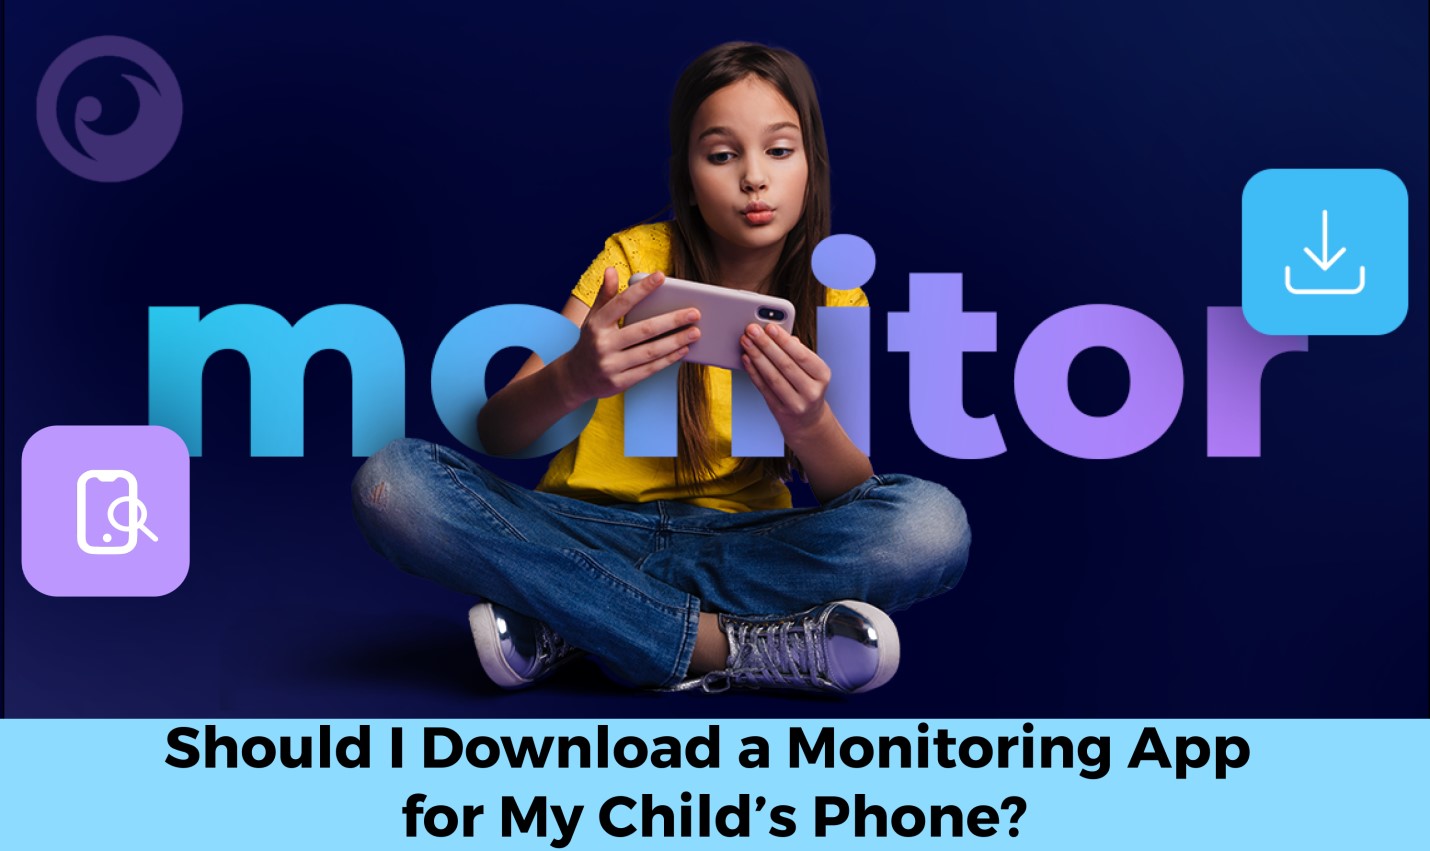 Devo baixar um aplicativo de monitoramento para o telefone do meu filho? - imagem de novidades em imei.info